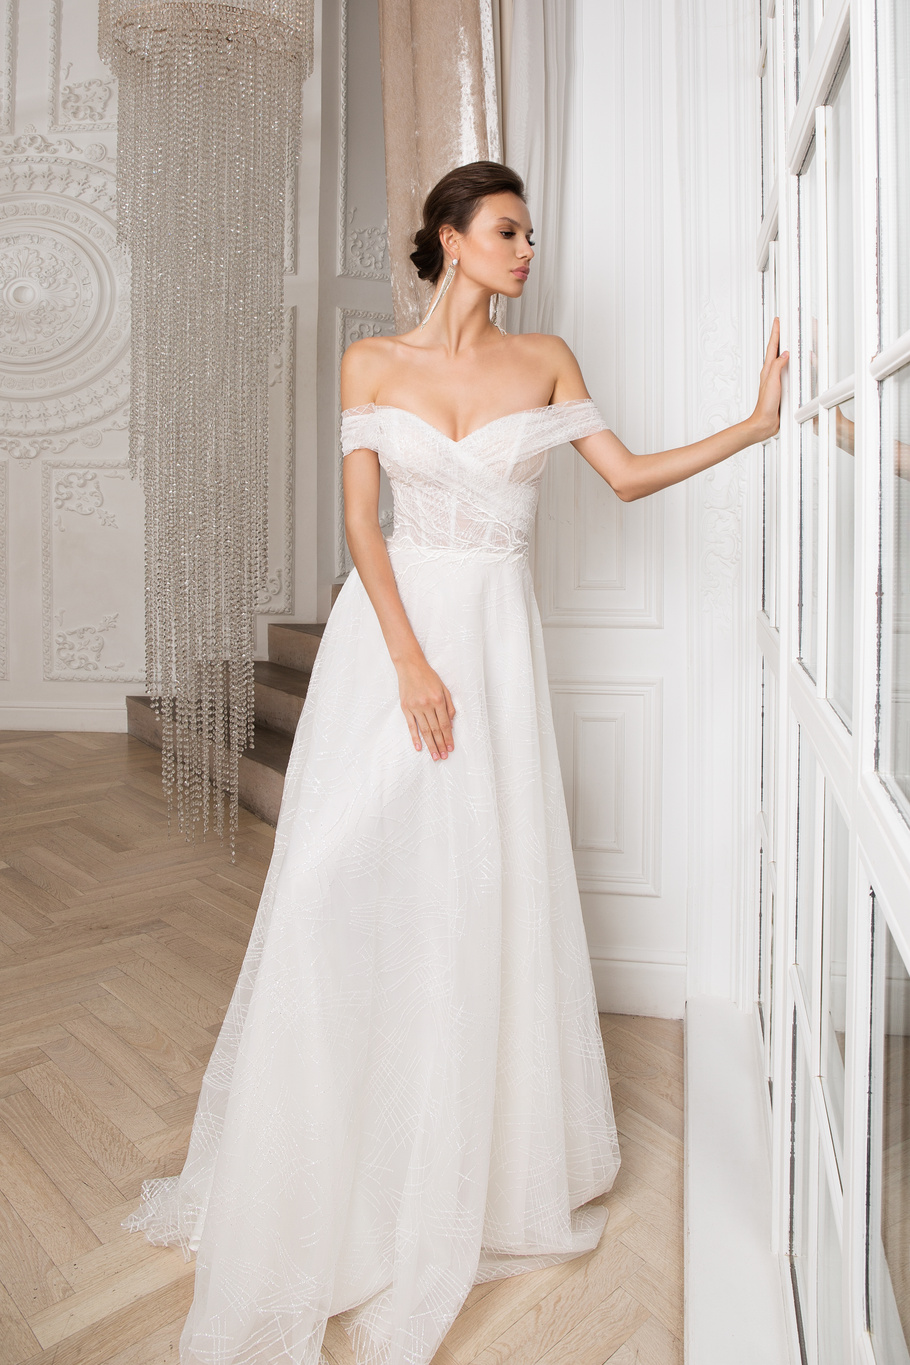 Купить свадебное платье «Ричи» Мэрри Марк из коллекции 2020 года в Екатеринбурге